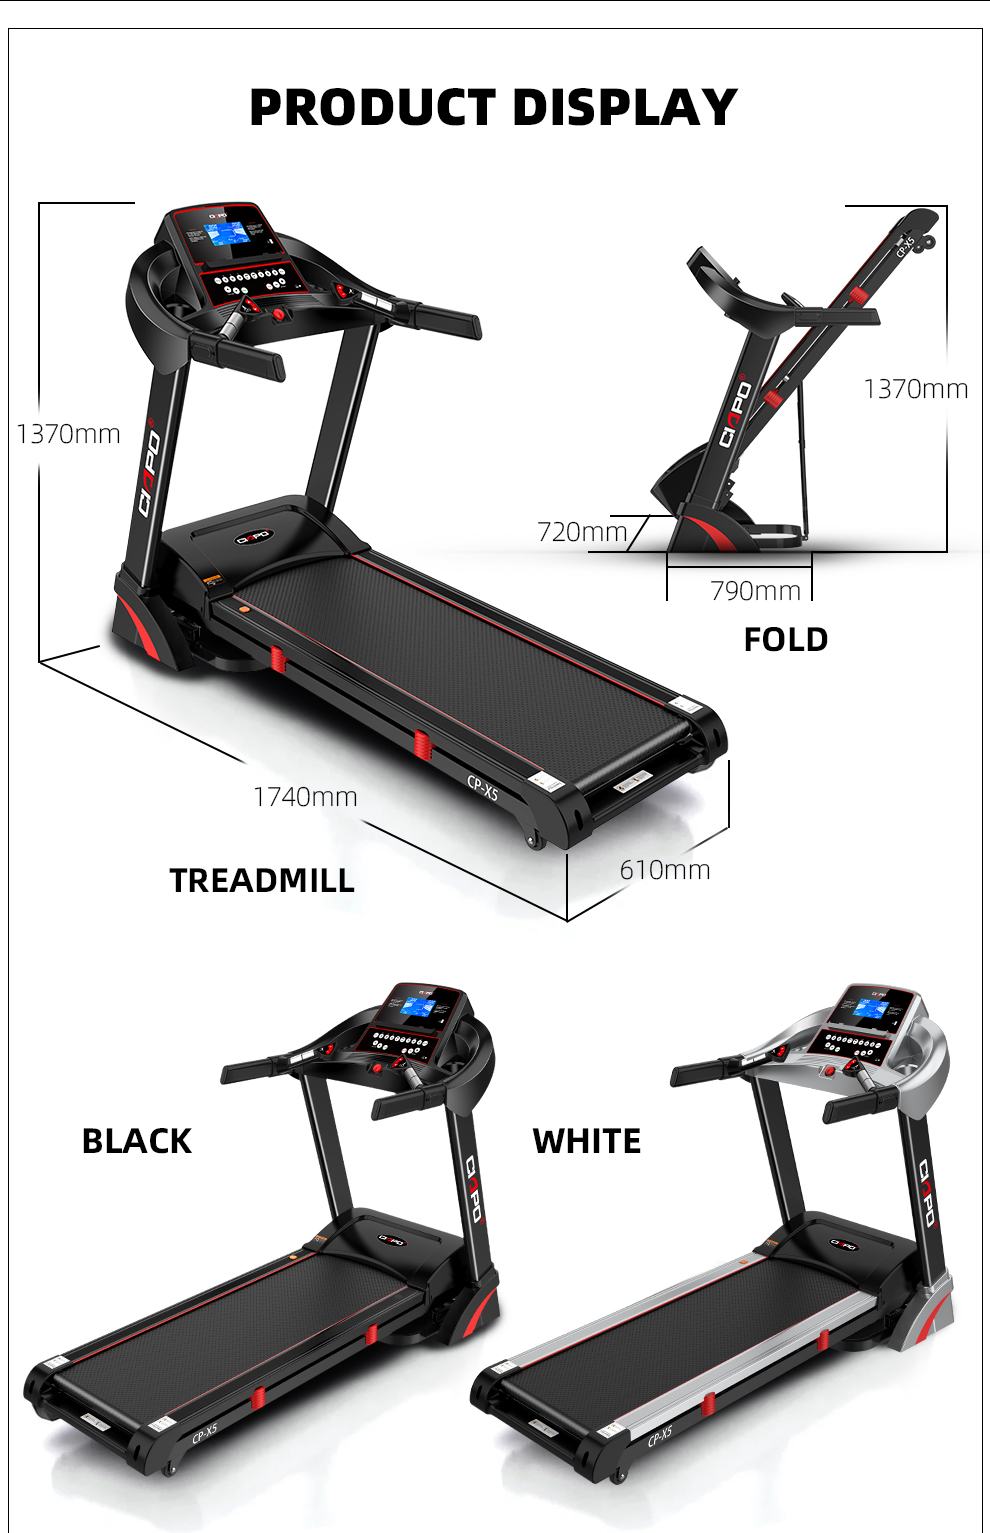 CIAPO Tapis roulant Home Fitness Electric Treadmill Running Machine Izinsiza kusebenza zeGym Fitness